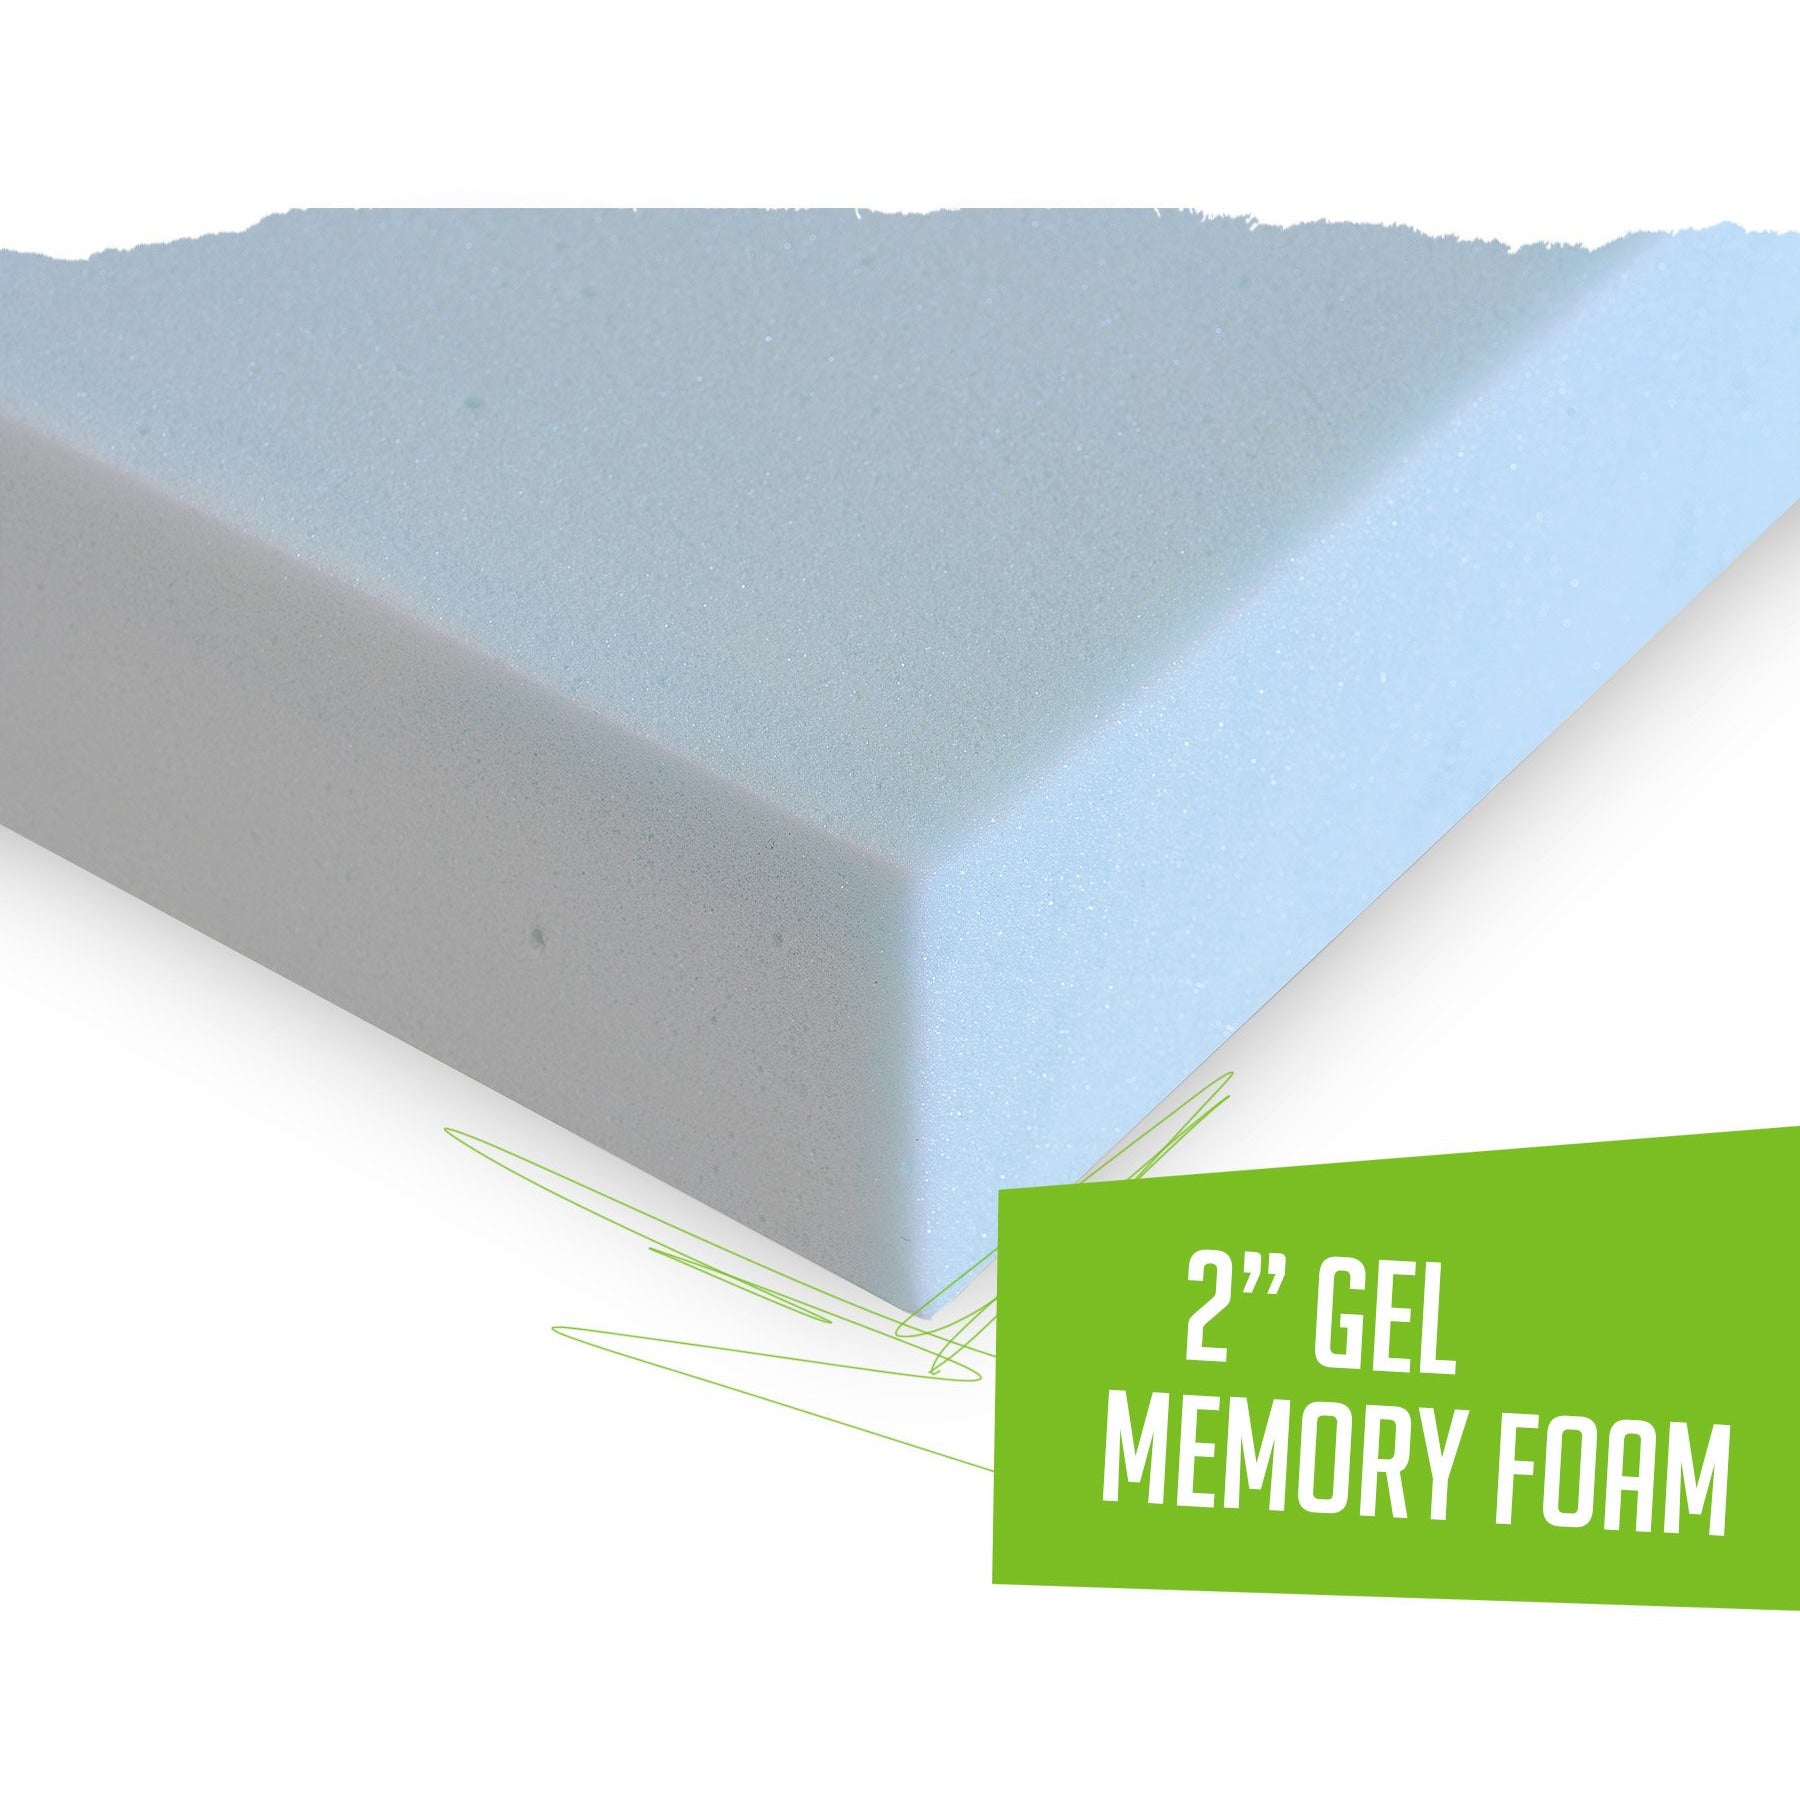 2" Gel Memory Foam Mattress Topper | Off-Road Bedding